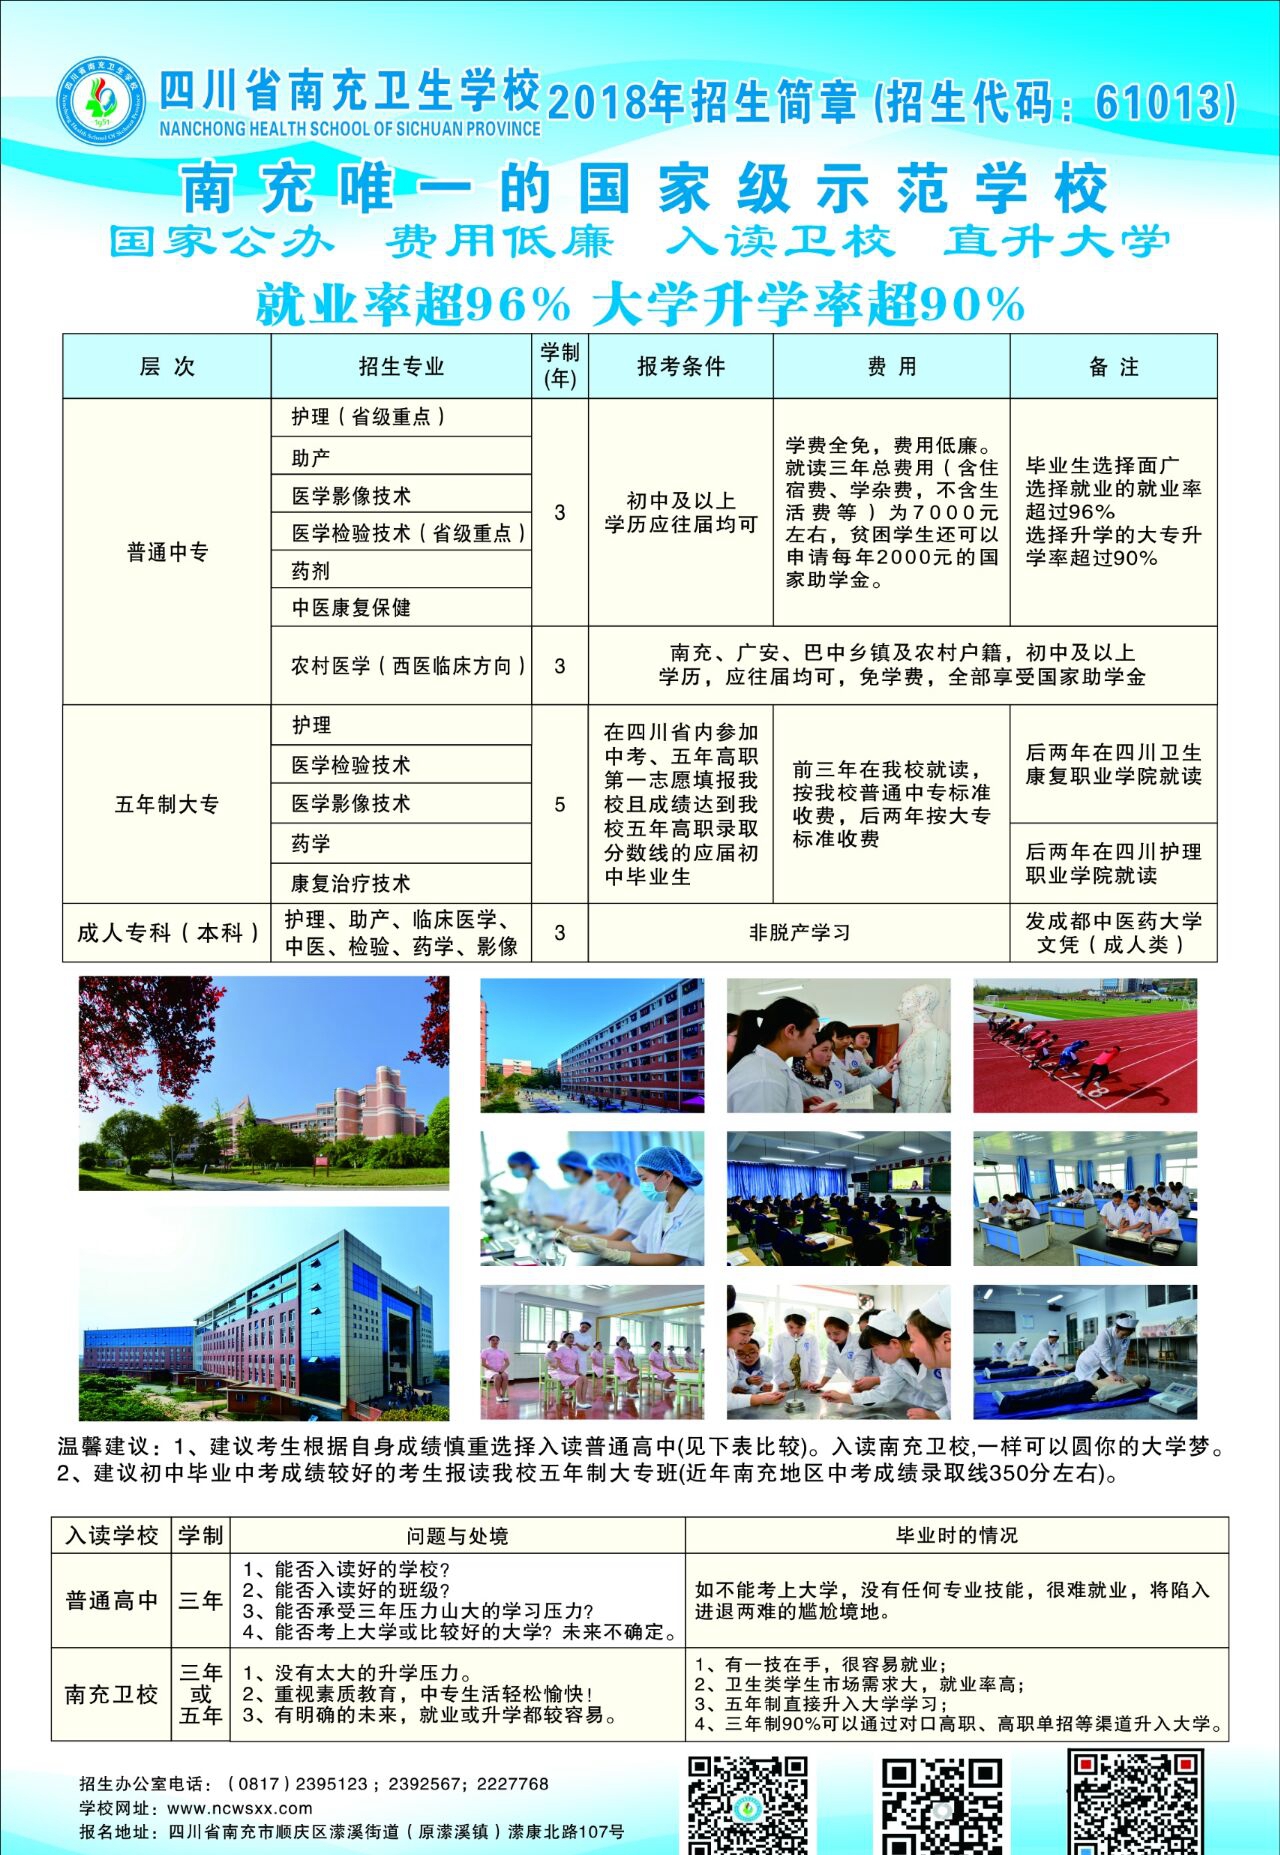 四川省南充卫生学校2020年招生简章.jpg